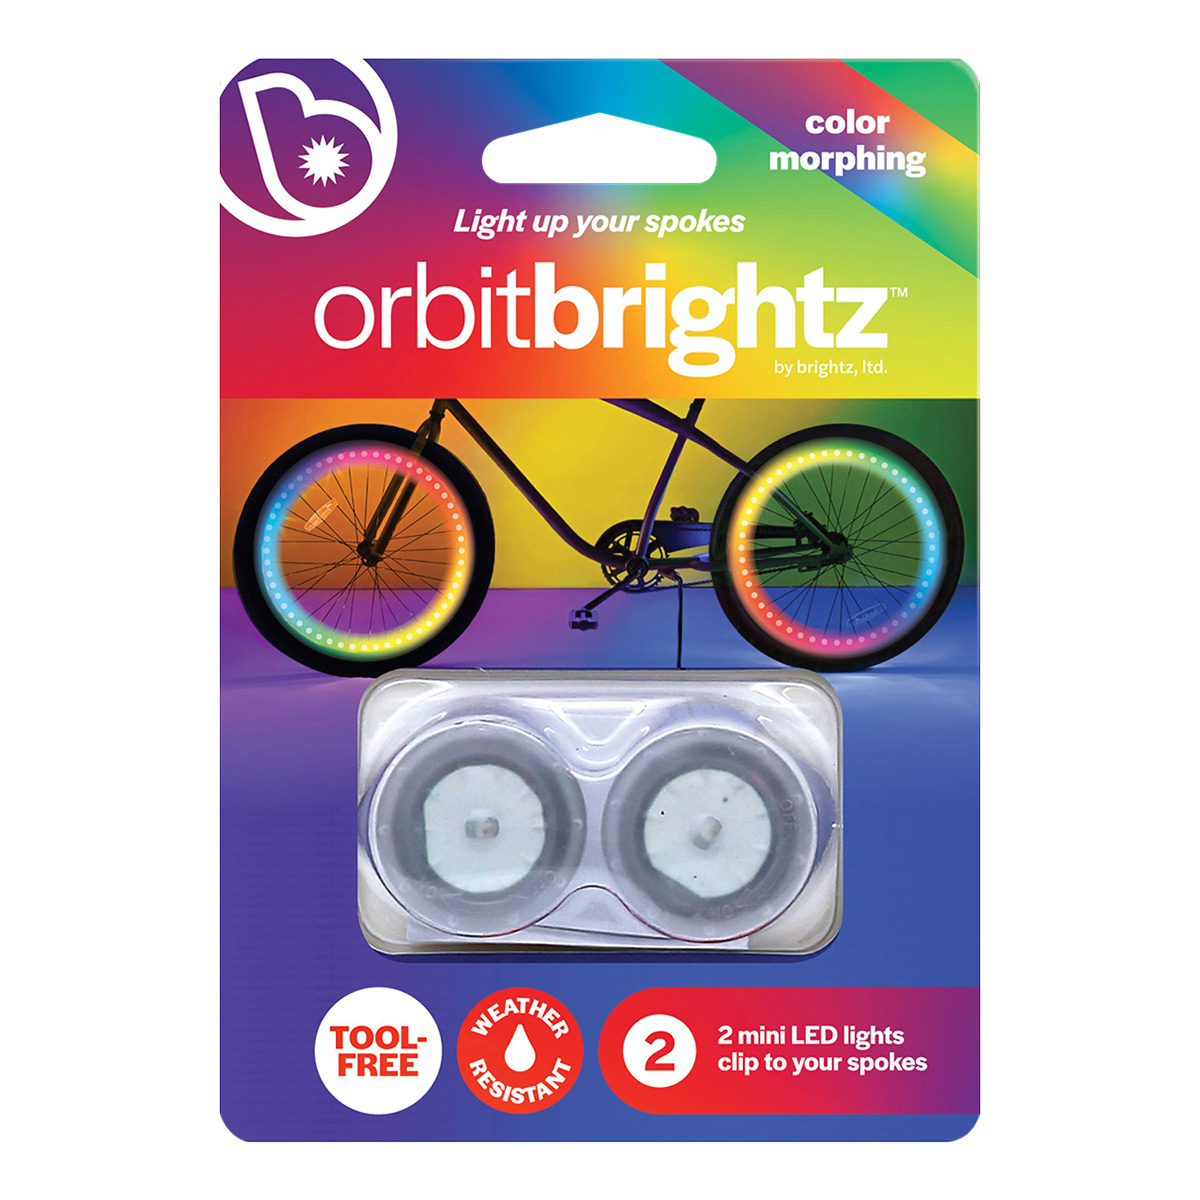 Brightz Orbit Brightz Mini LED Bike Spoke Lights | The Container Store